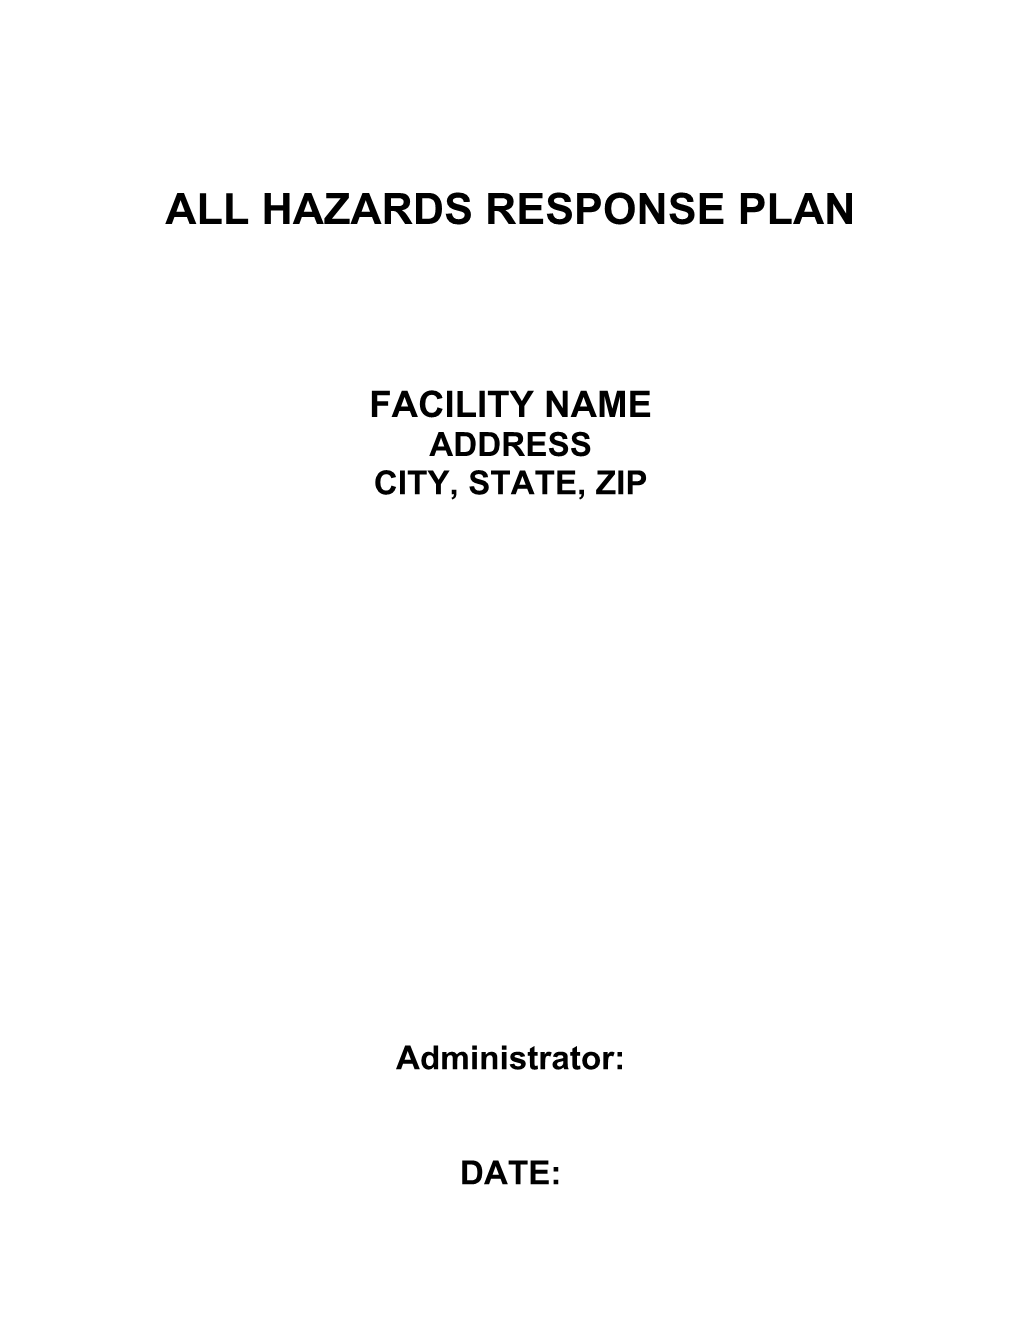 All Hazards Response Plan